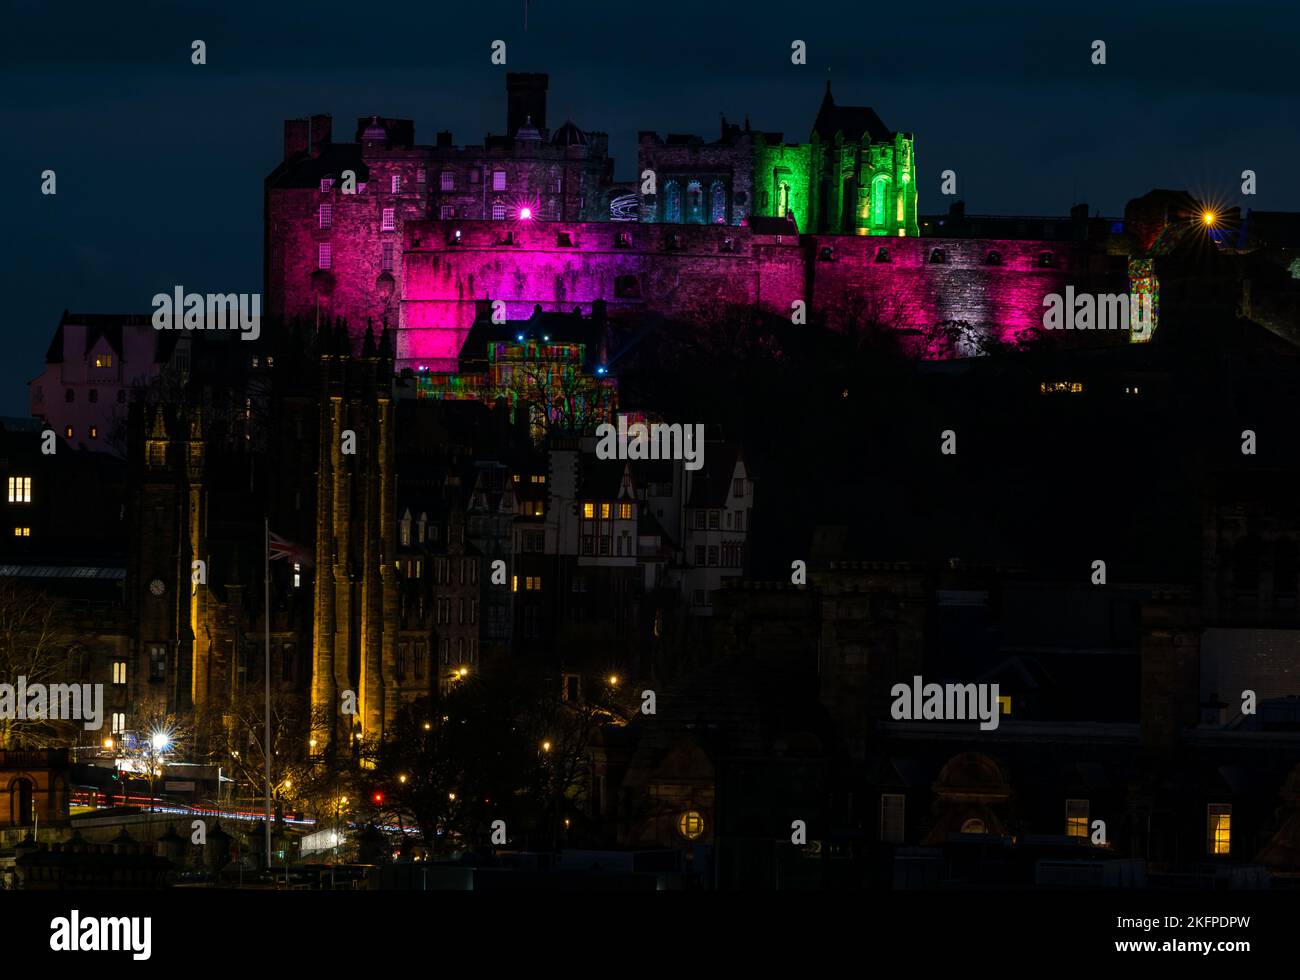 Edinburgh Castle beleuchtet in der Nacht von Castle of Light Veranstaltung, Edinburgh Stadtzentrum, Schottland, Großbritannien Stockfoto